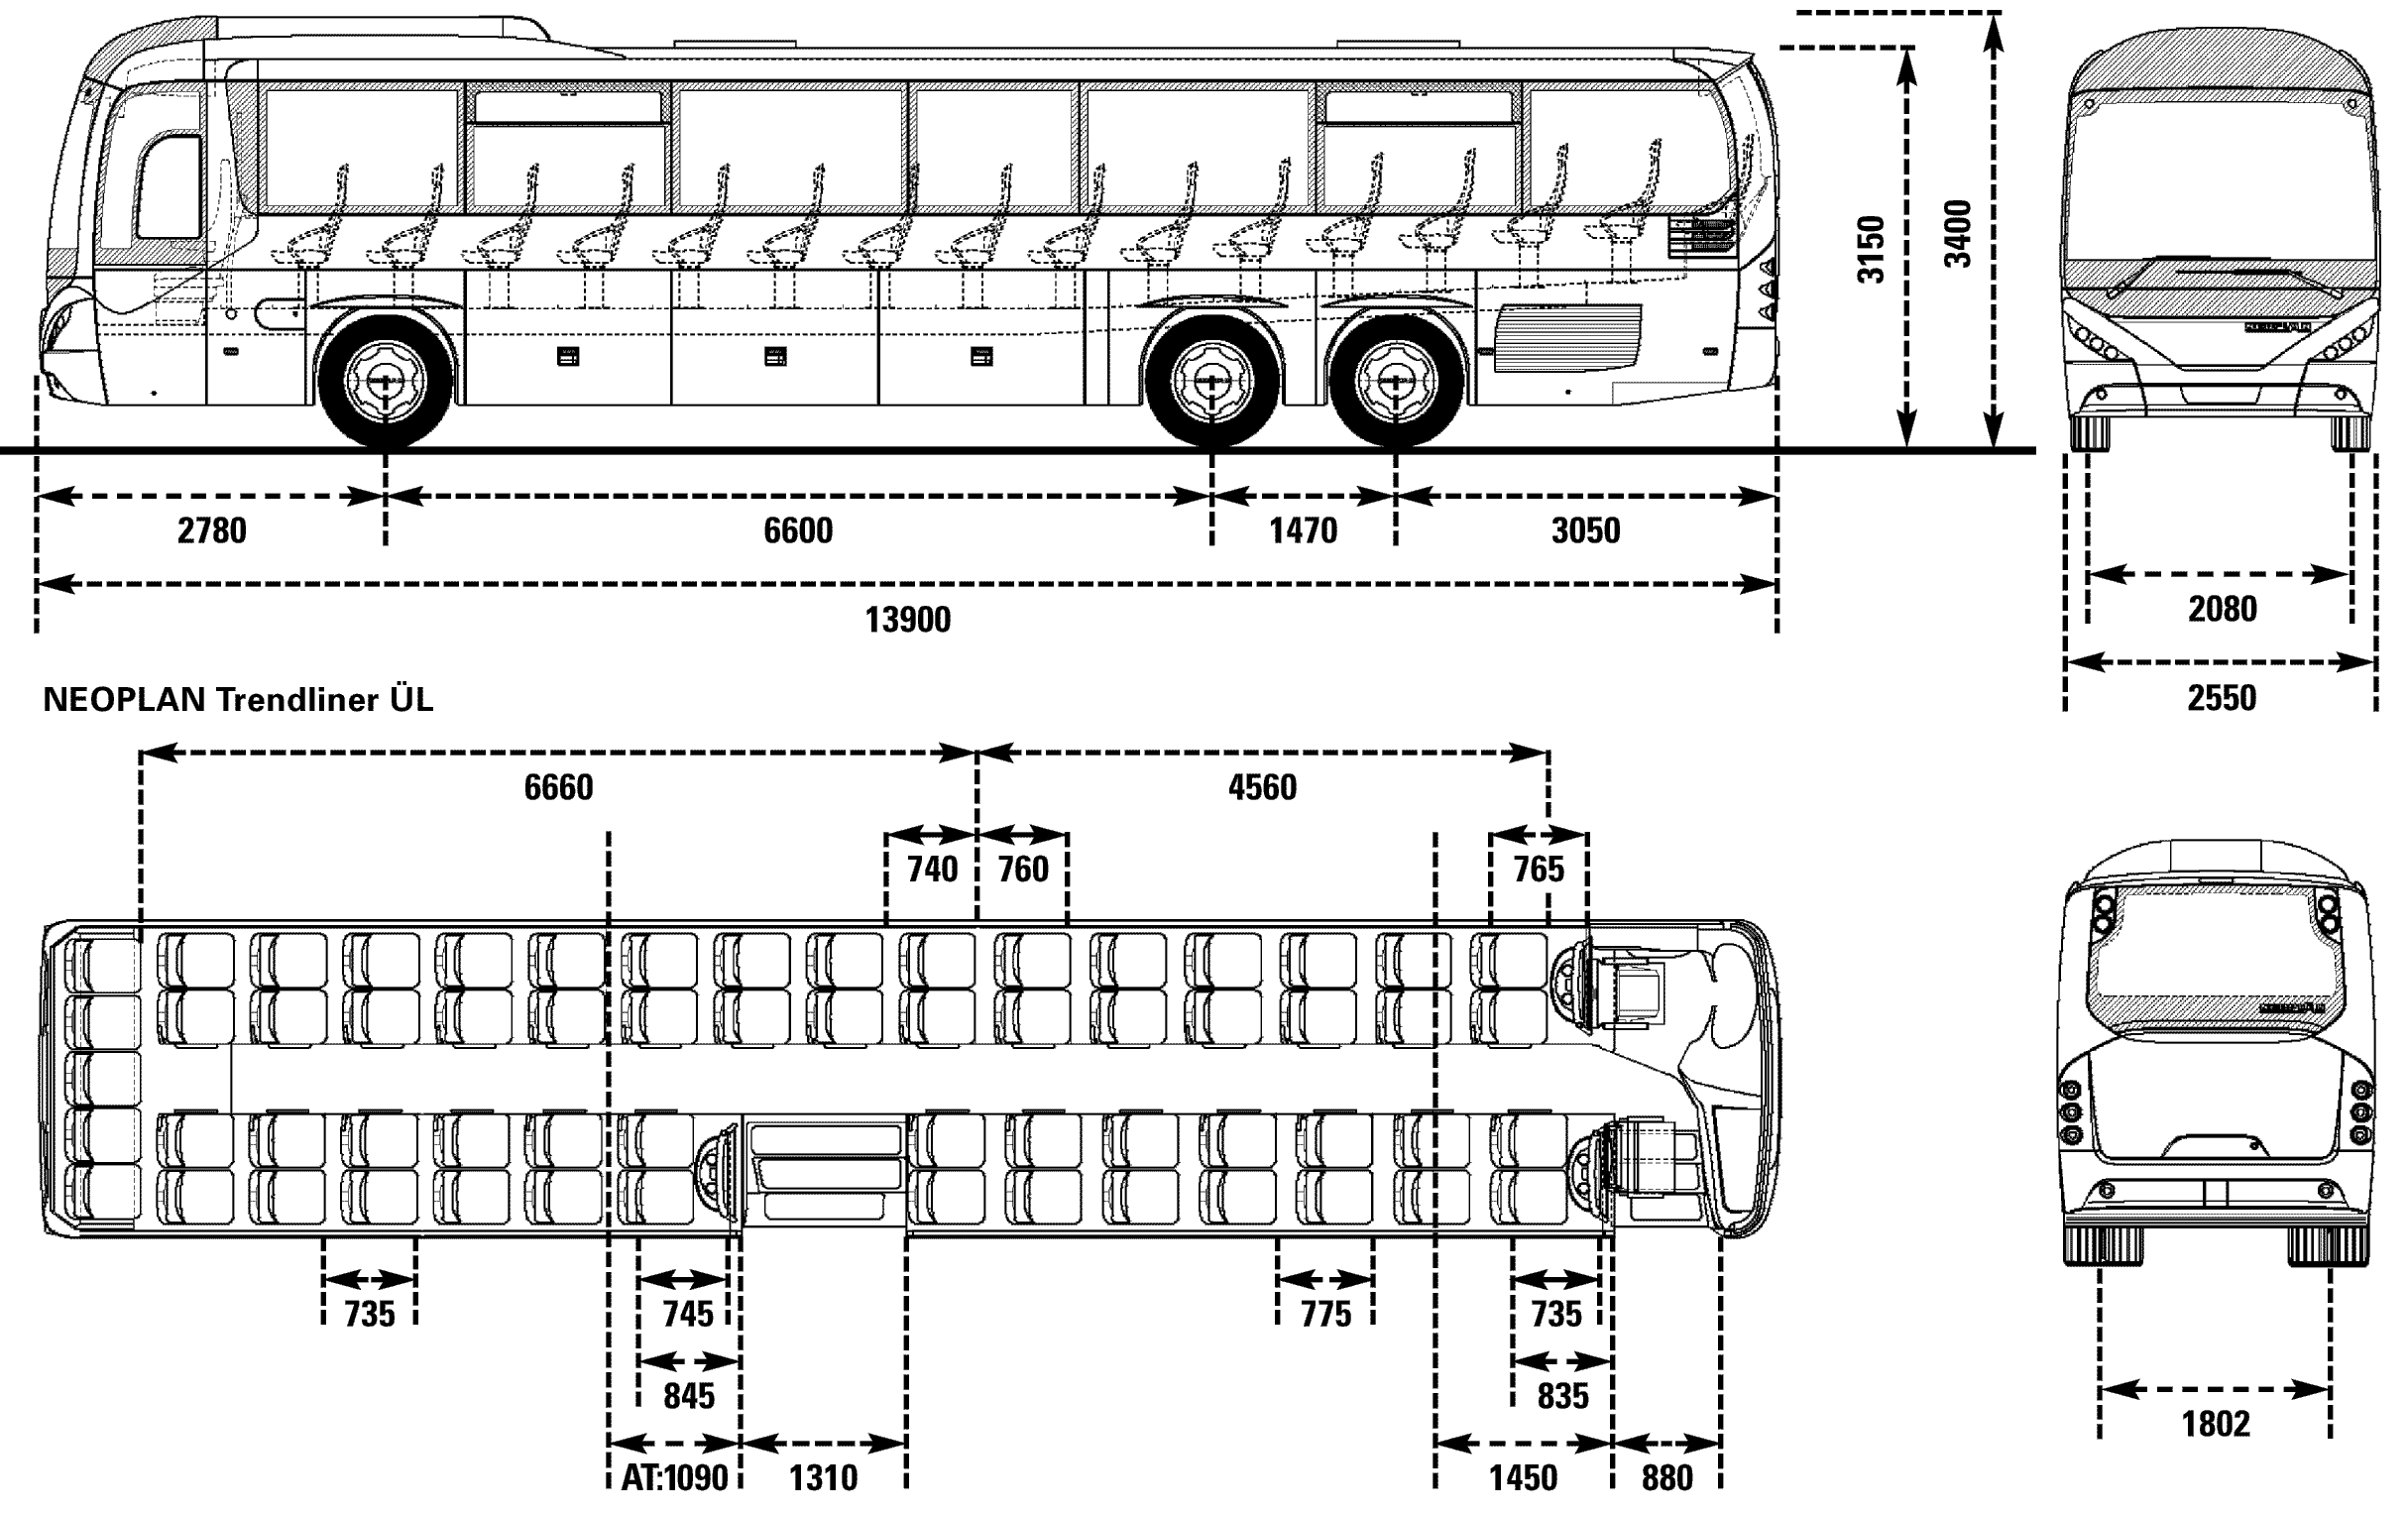 Neoplan Trendliner UL blueprint